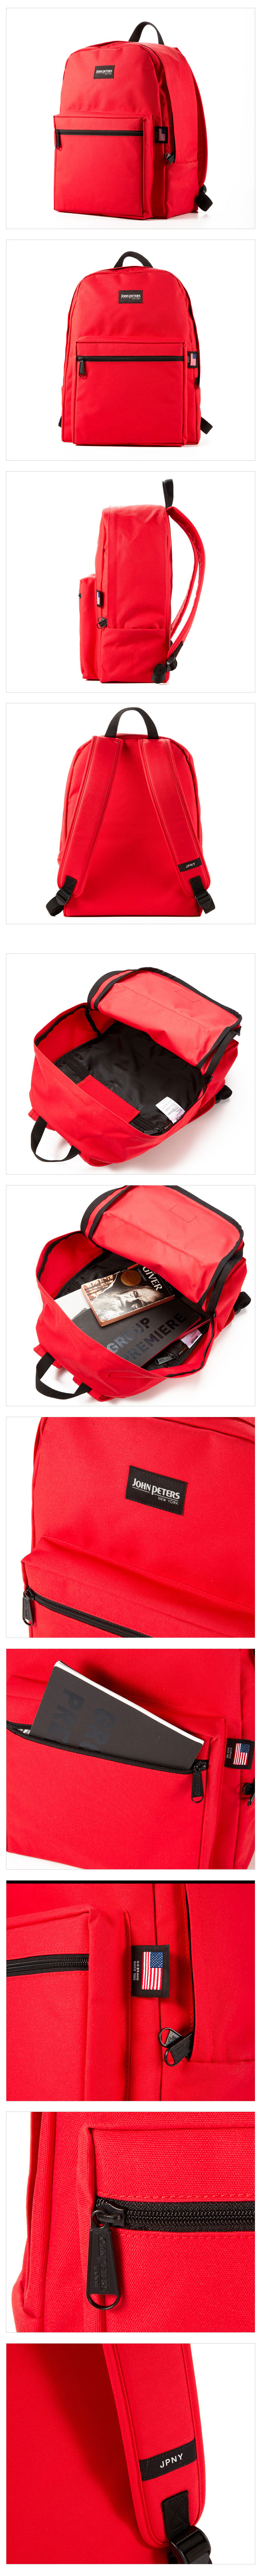 N1202 Medium School Backpack Red